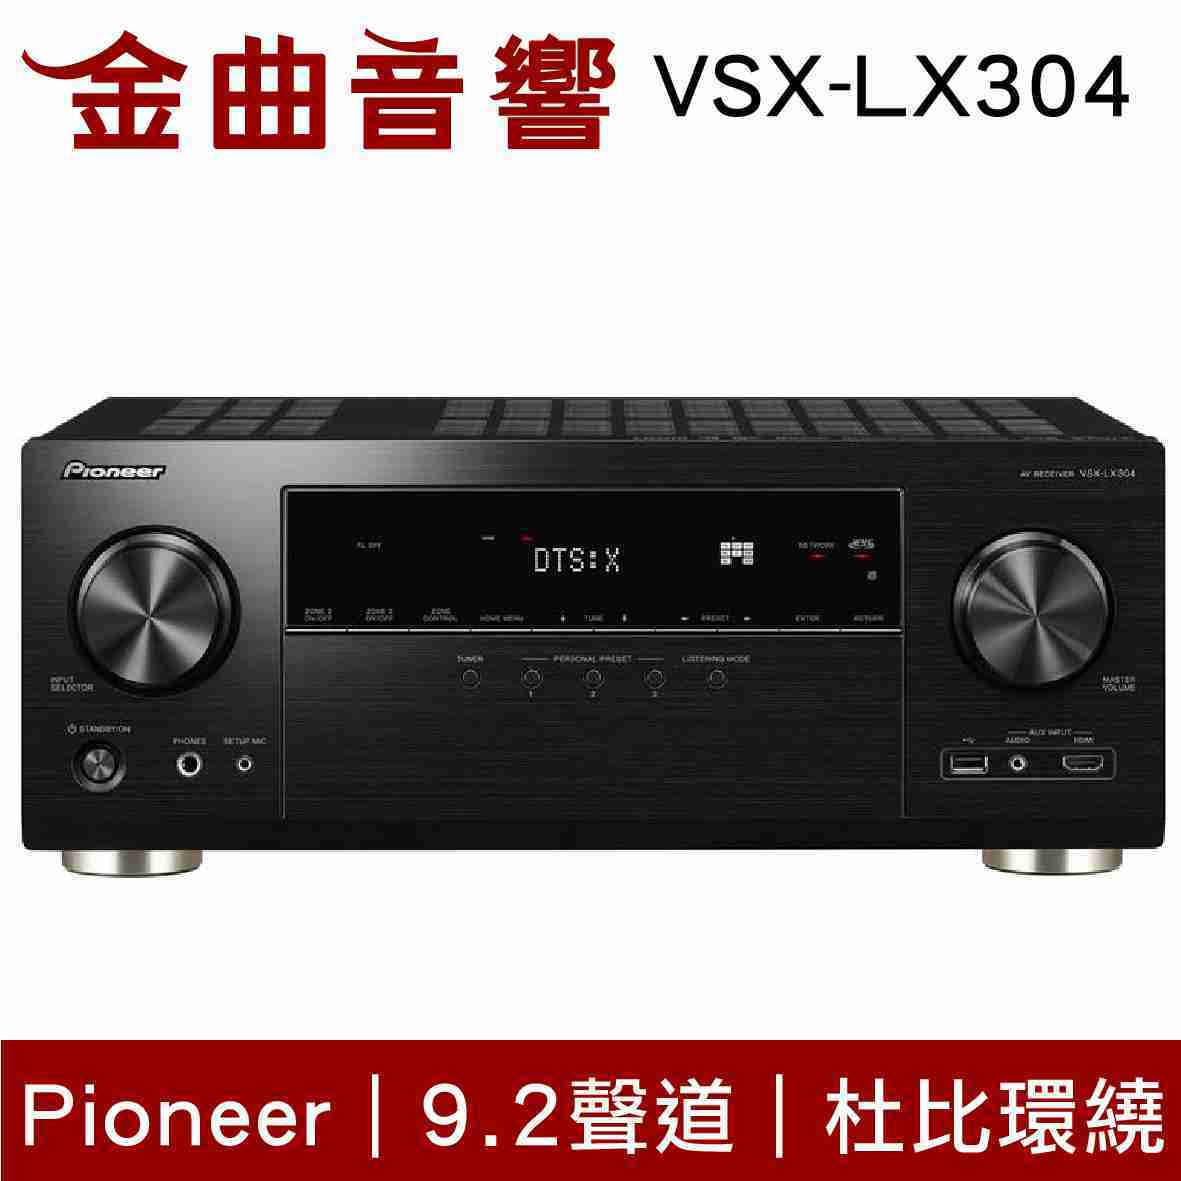 Pioneer 先鋒 VSX-LX304 9.2聲道 AV環繞擴大機 | 金曲音響